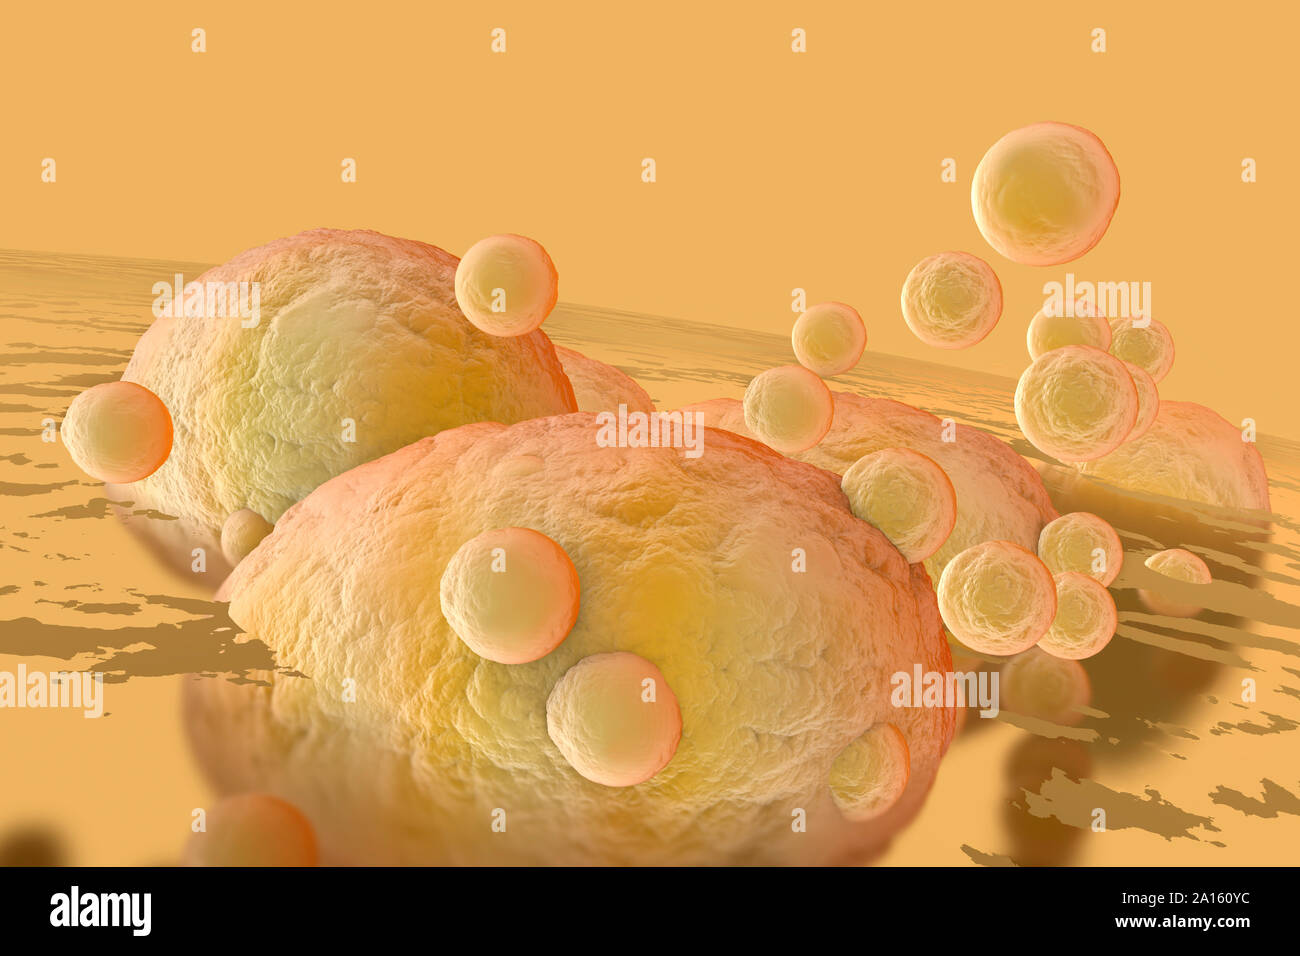 Illustration en rendu 3D, la visualisation des cellules graisseuses et de colmatage dans le corps humain Banque D'Images